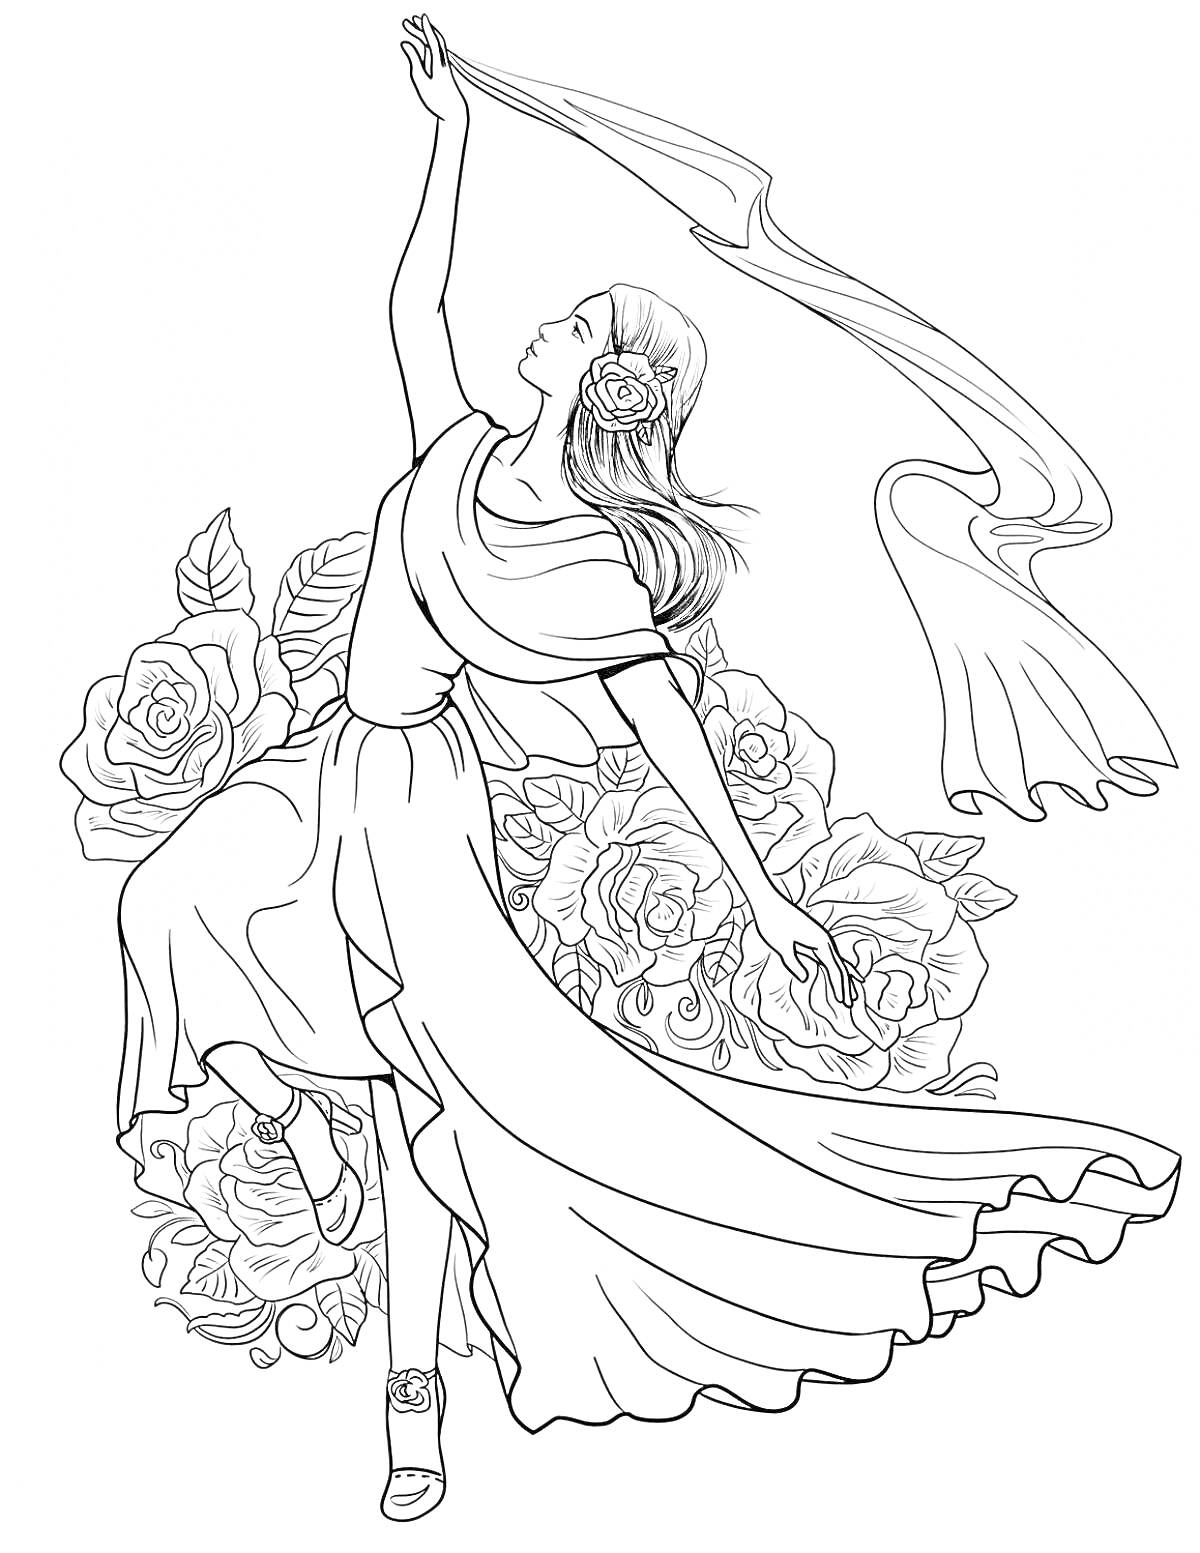 Раскраска Танцующая женщина в традиционном платье Испании с розами на фоне и развевающейся тканью